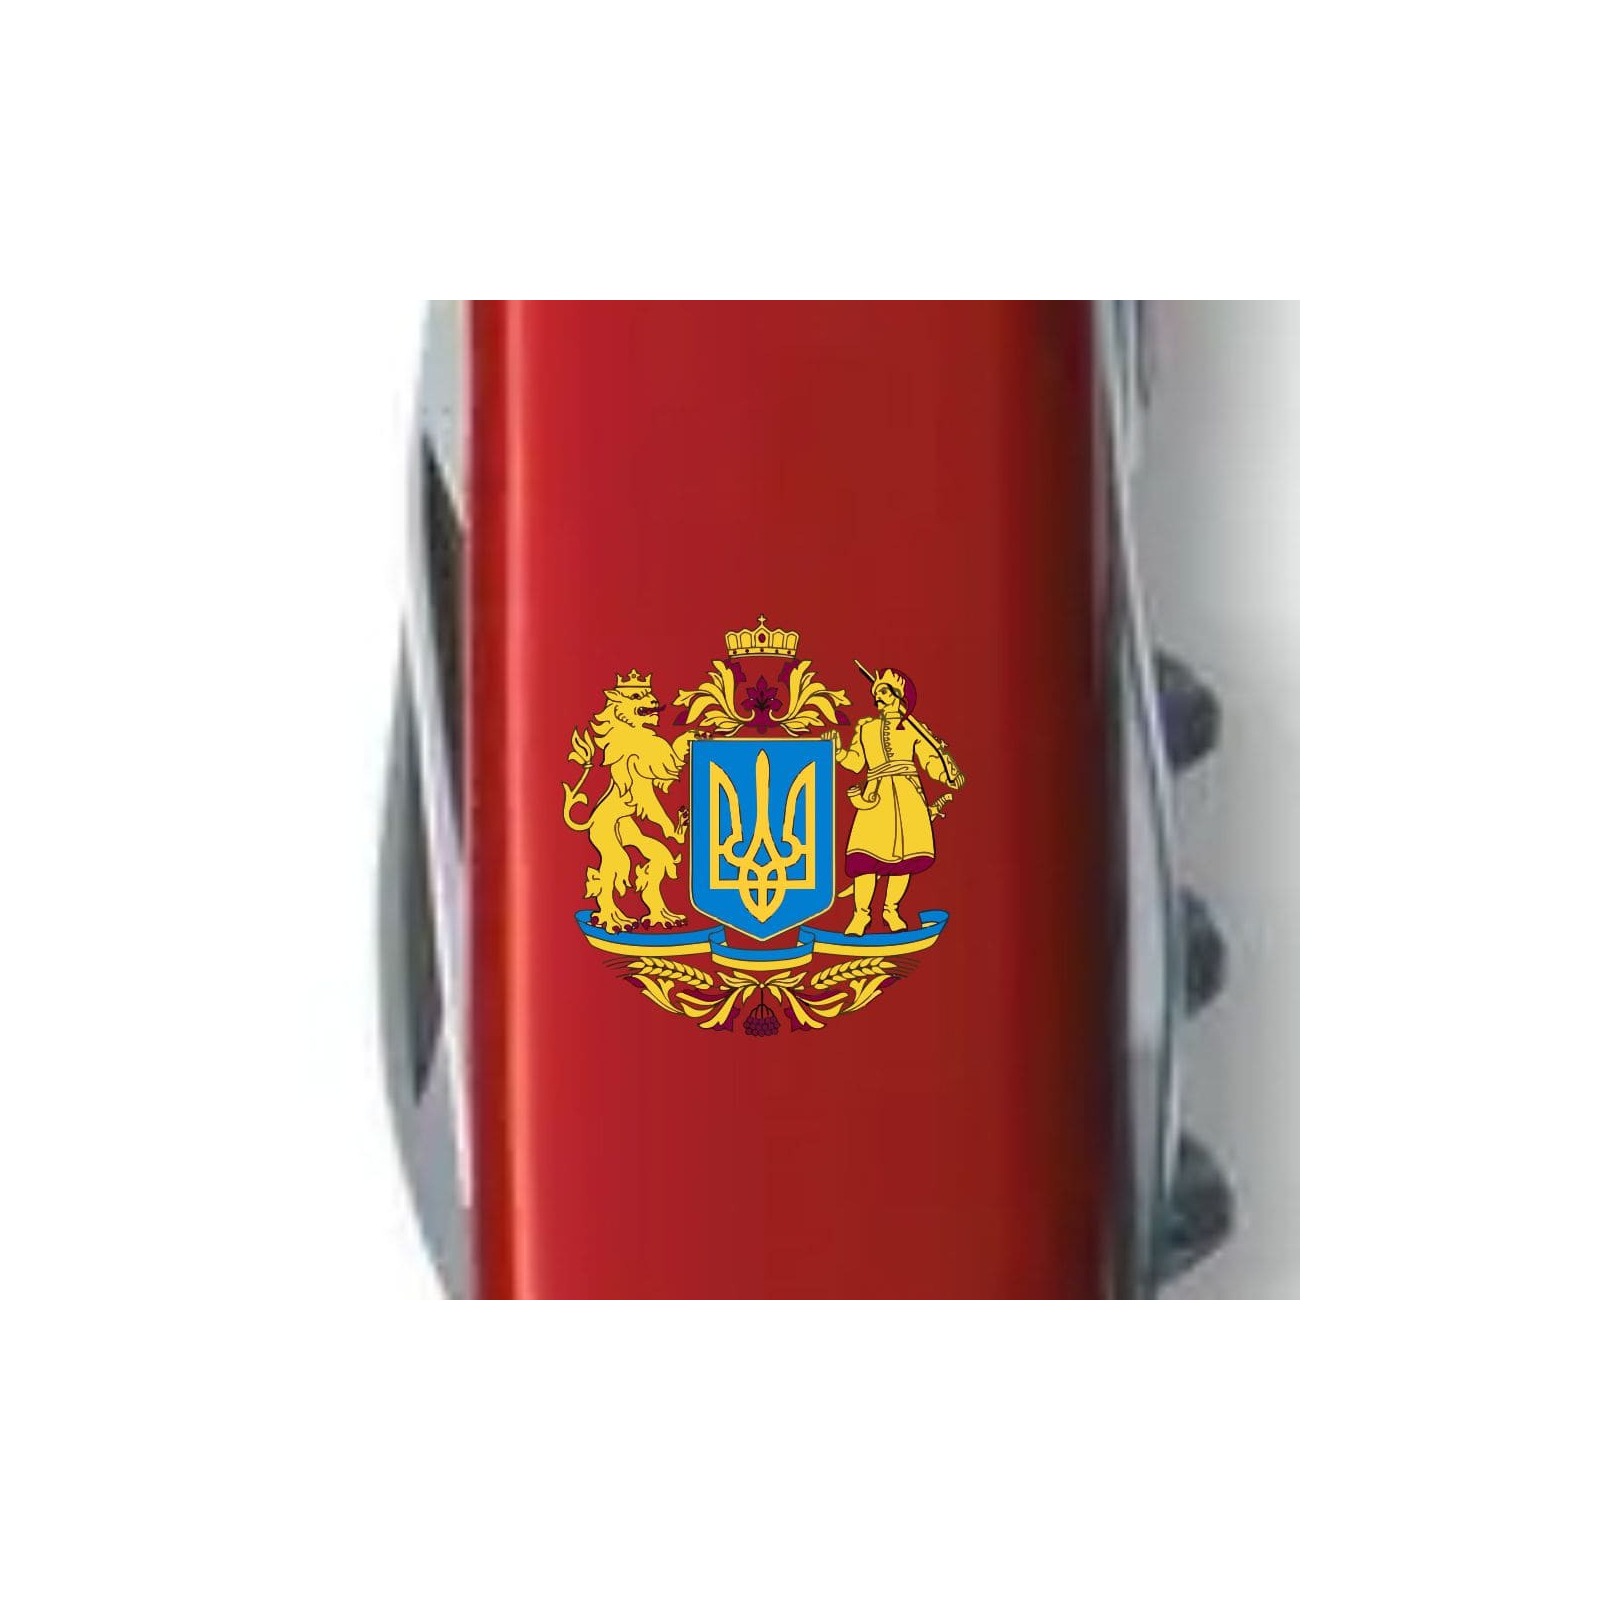 Нож Victorinox Climber Ukraine Red "Великий Герб України" (1.3703_T0400u) изображение 4